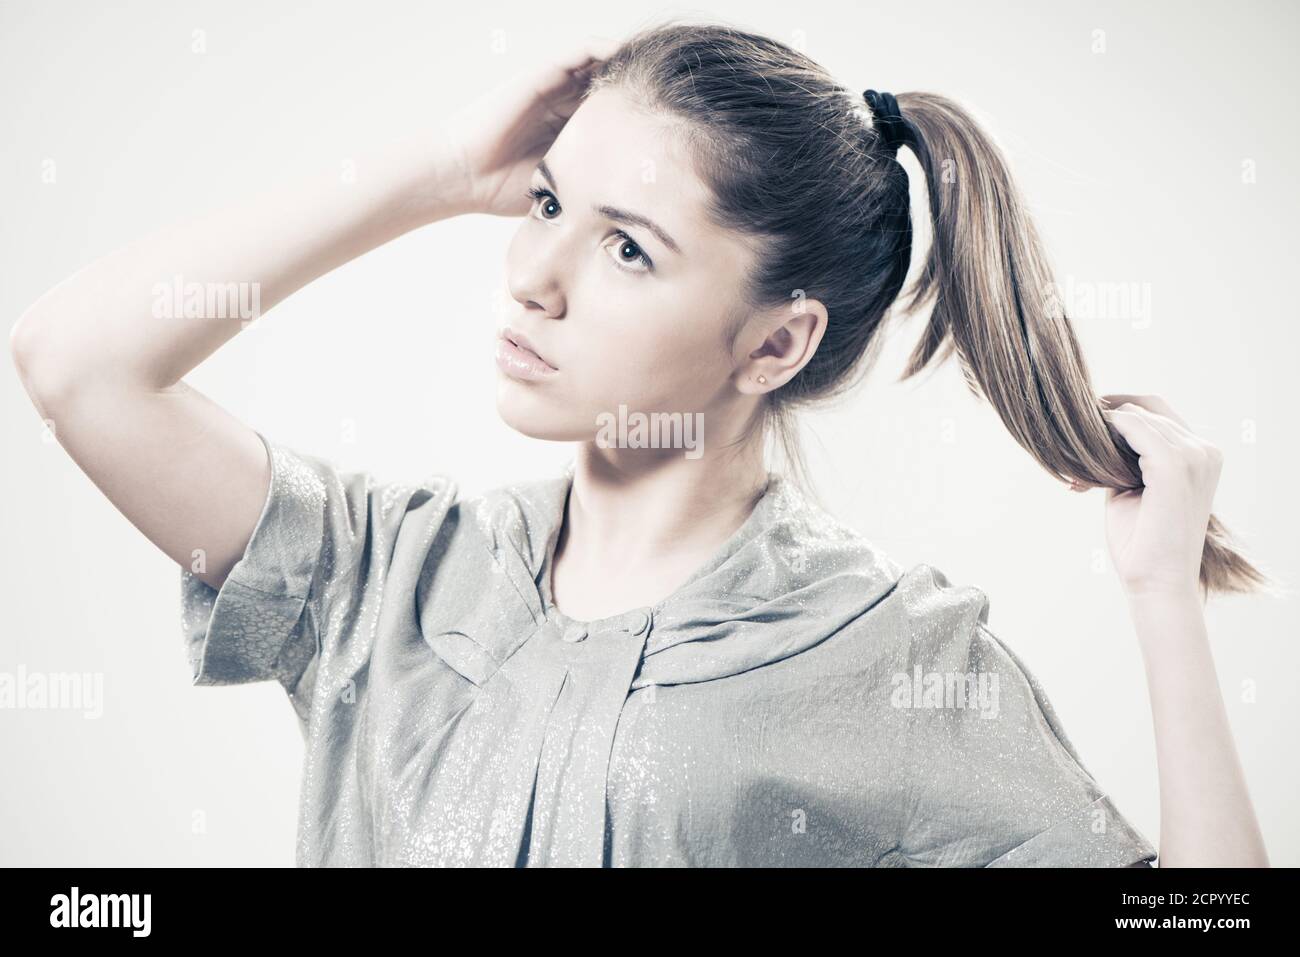 giovane bella ragazza adolescente ritratto su sfondo studio Foto Stock